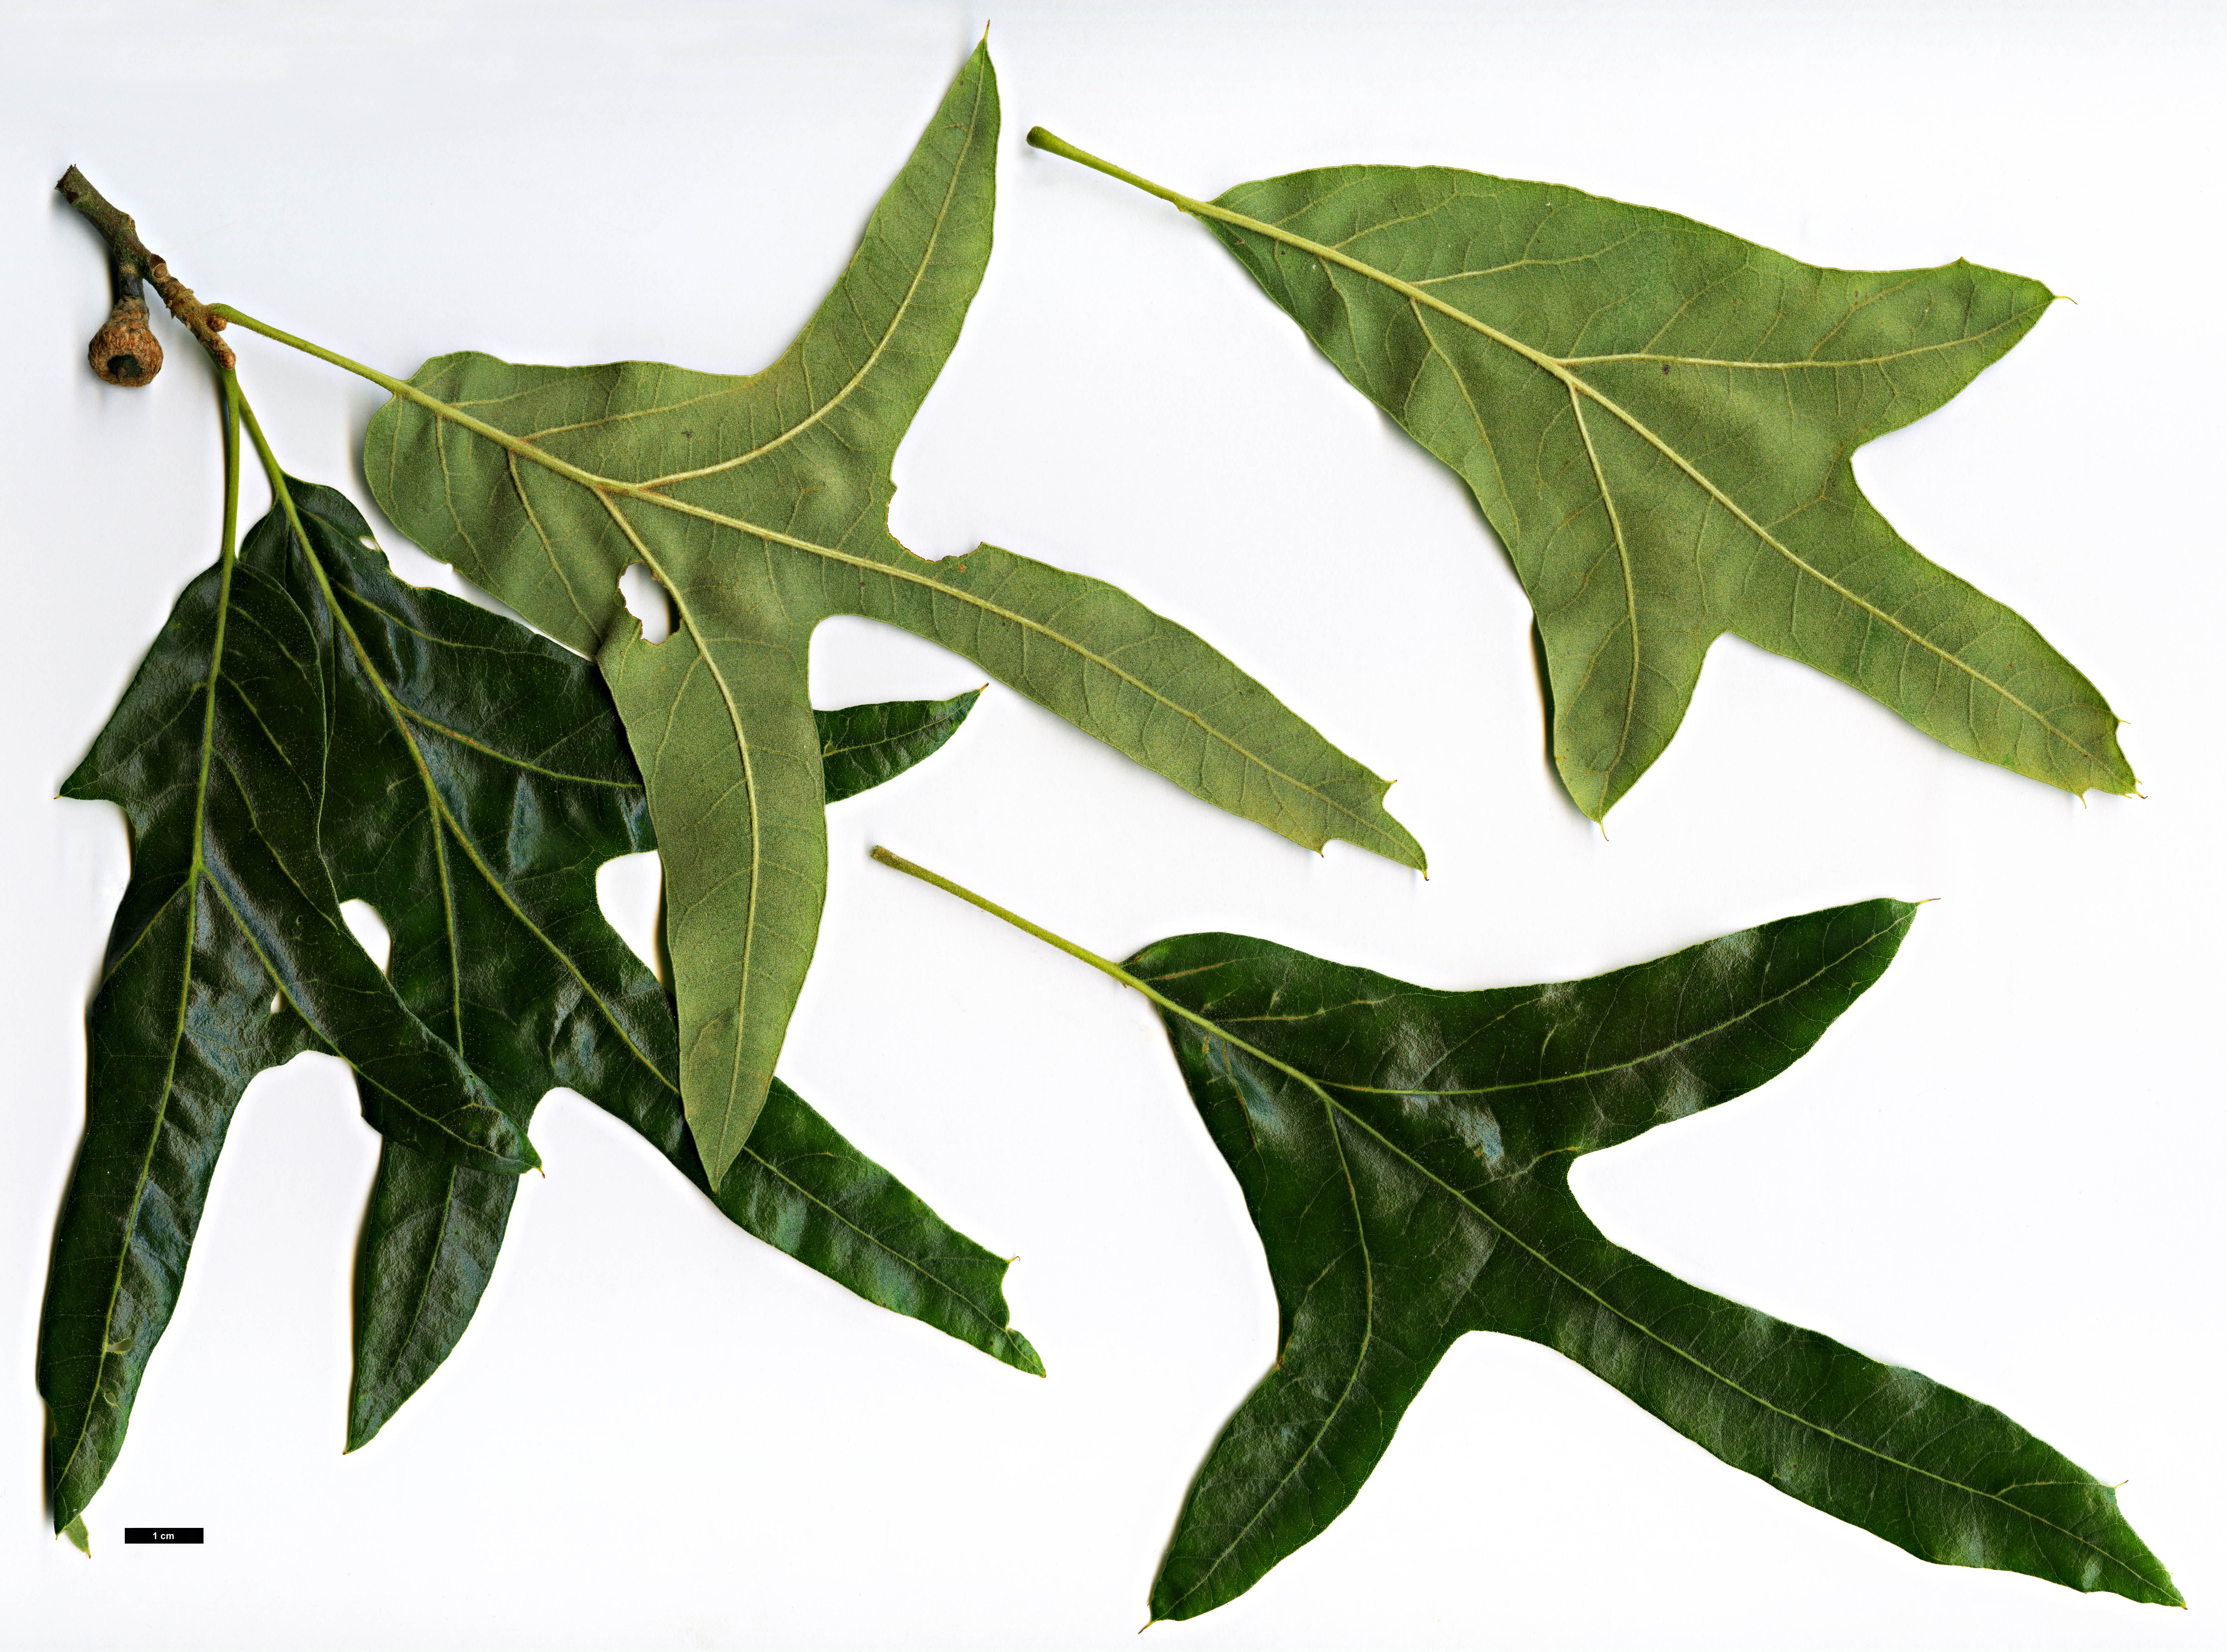 High resolution image: Family: Fagaceae - Genus: Quercus - Taxon: falcata